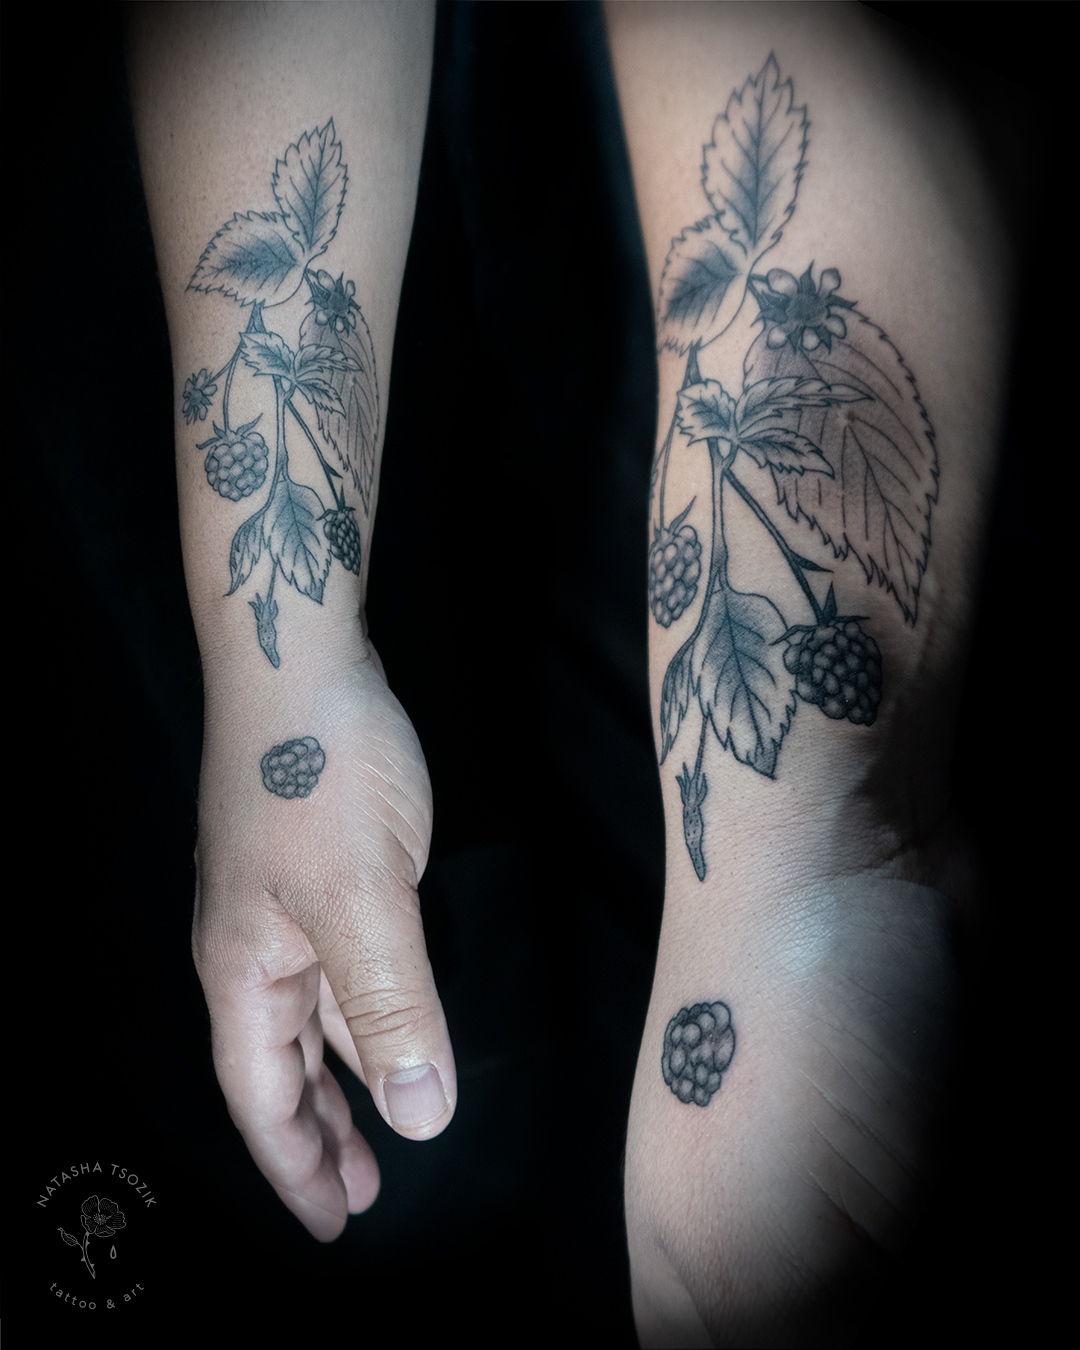 A raspberry tattoo on a forearm.